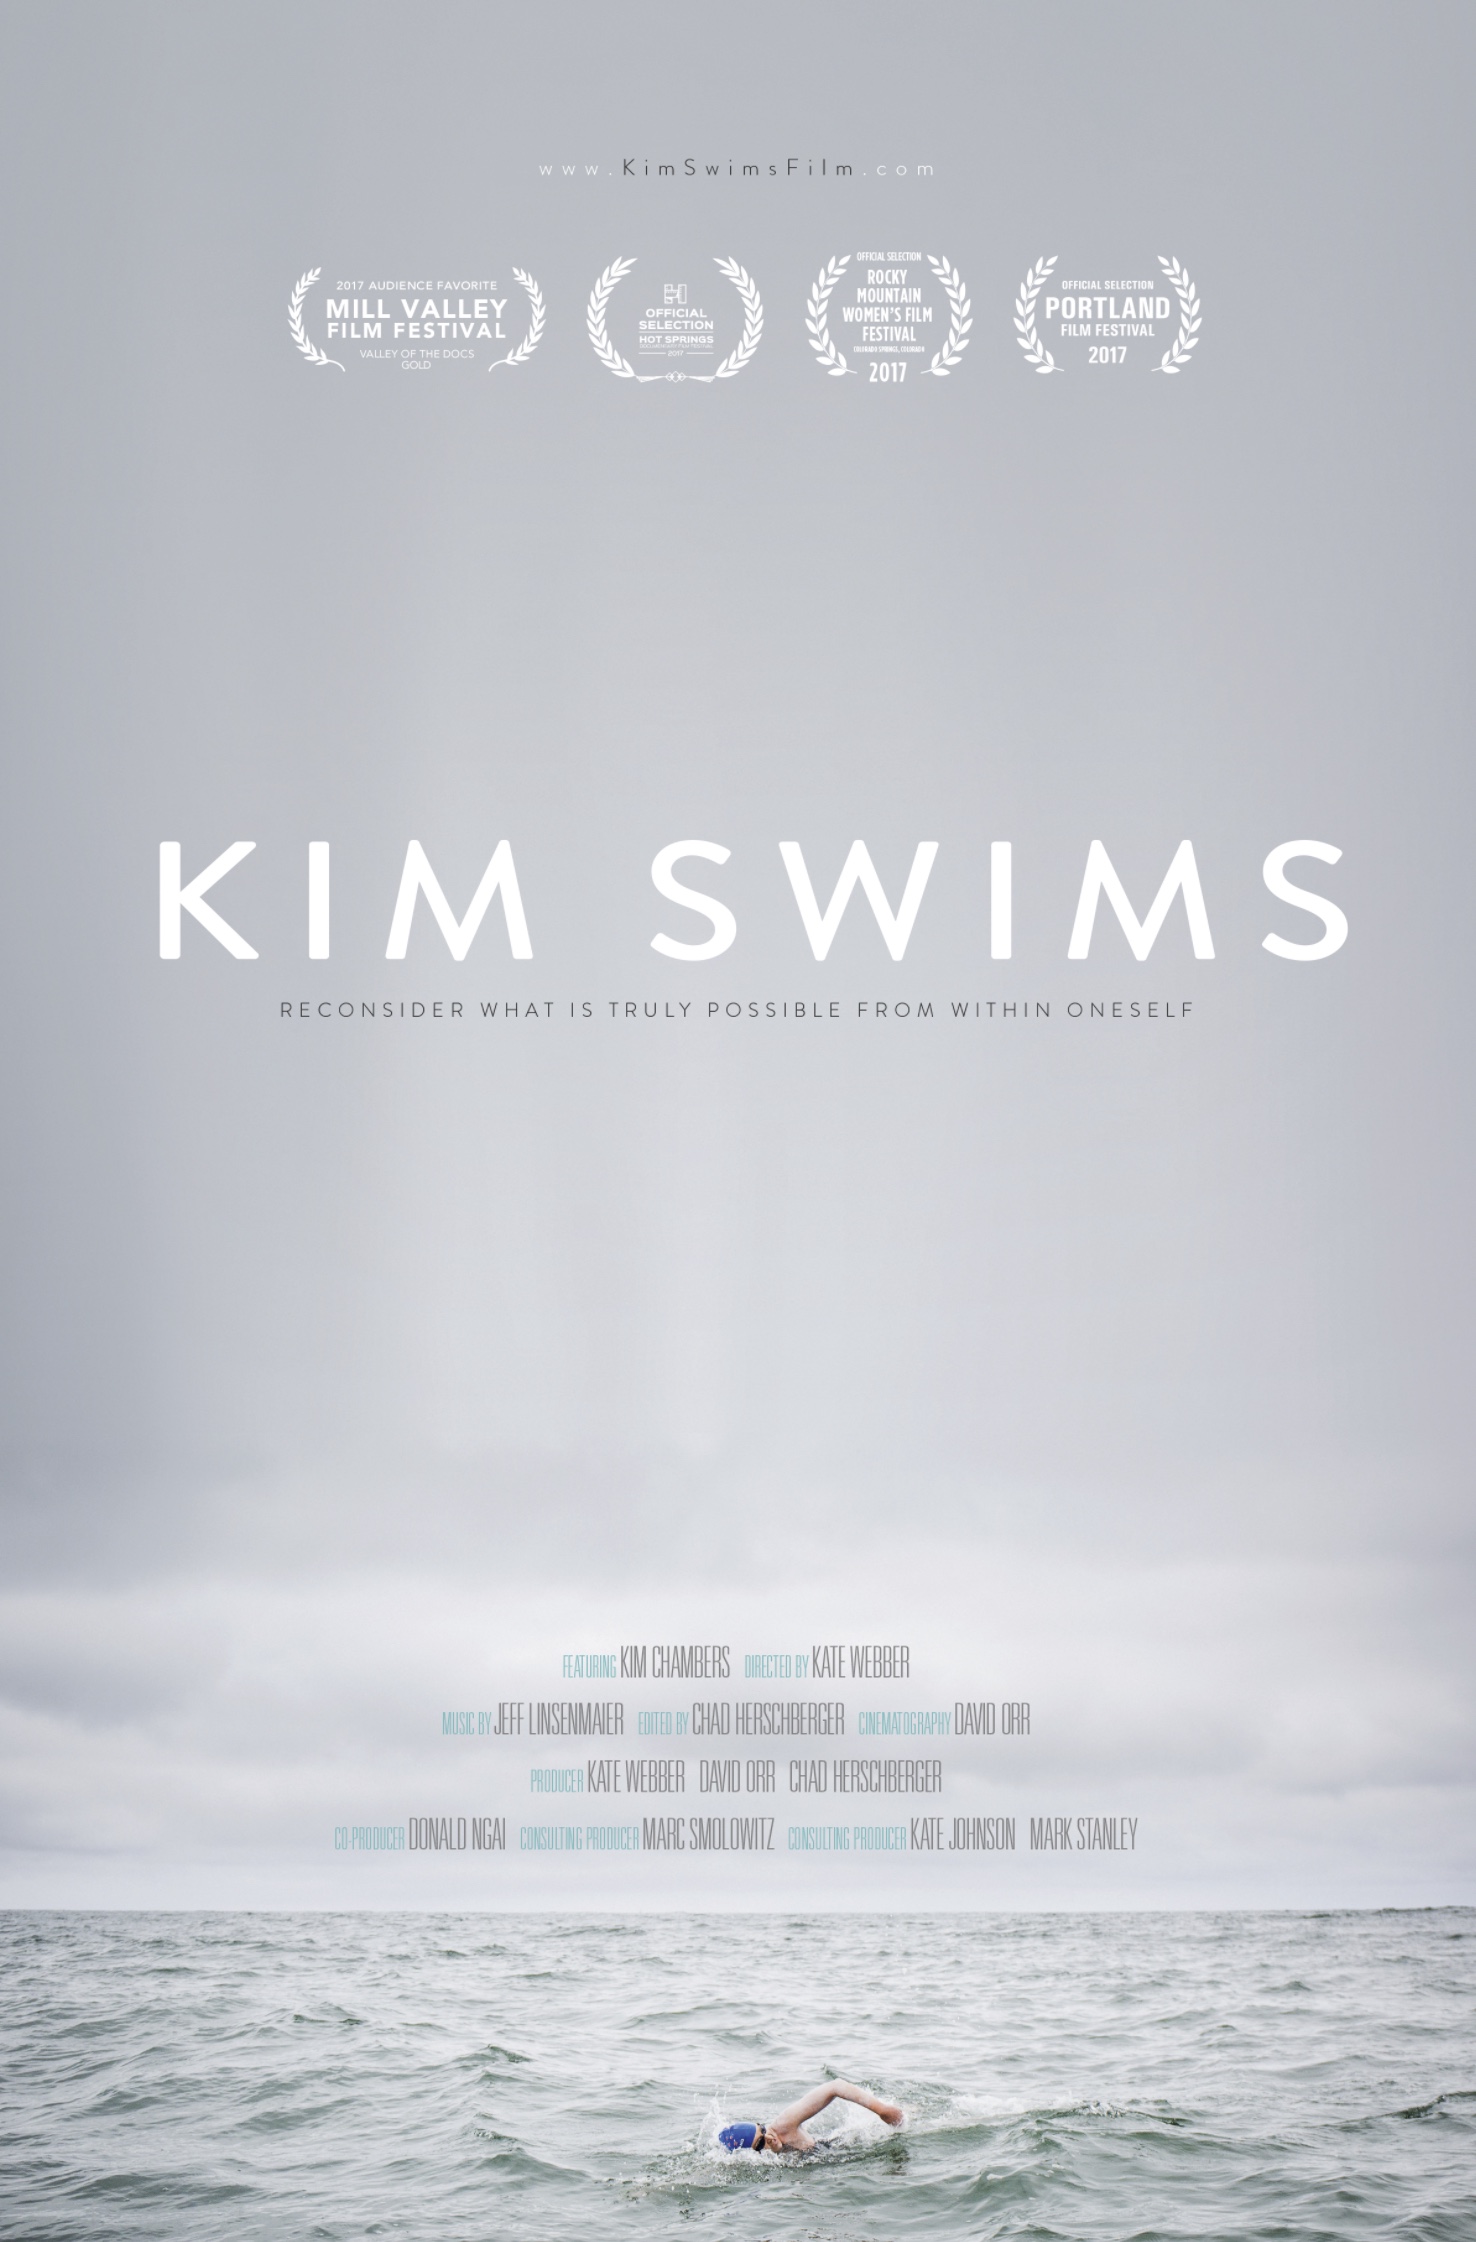 Kim Swims film poster